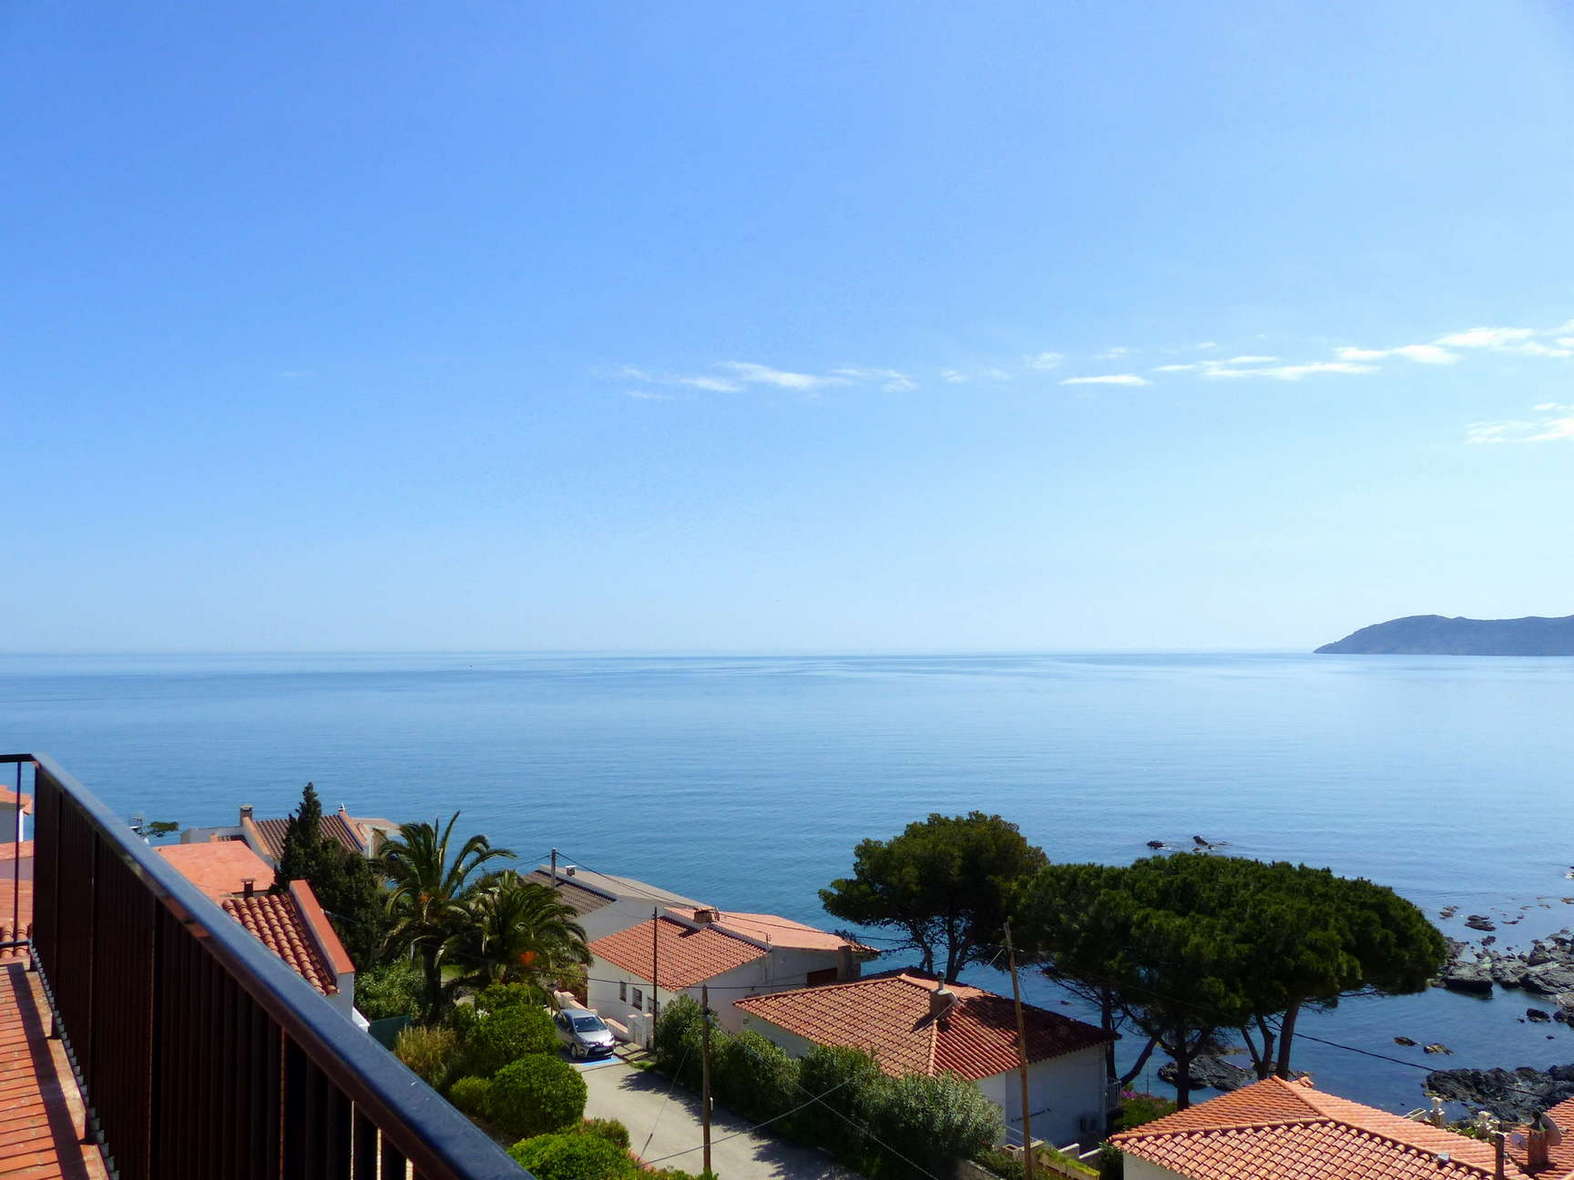 Magnífic apartament amb vistes espectaculars al mar, en venda a Llança